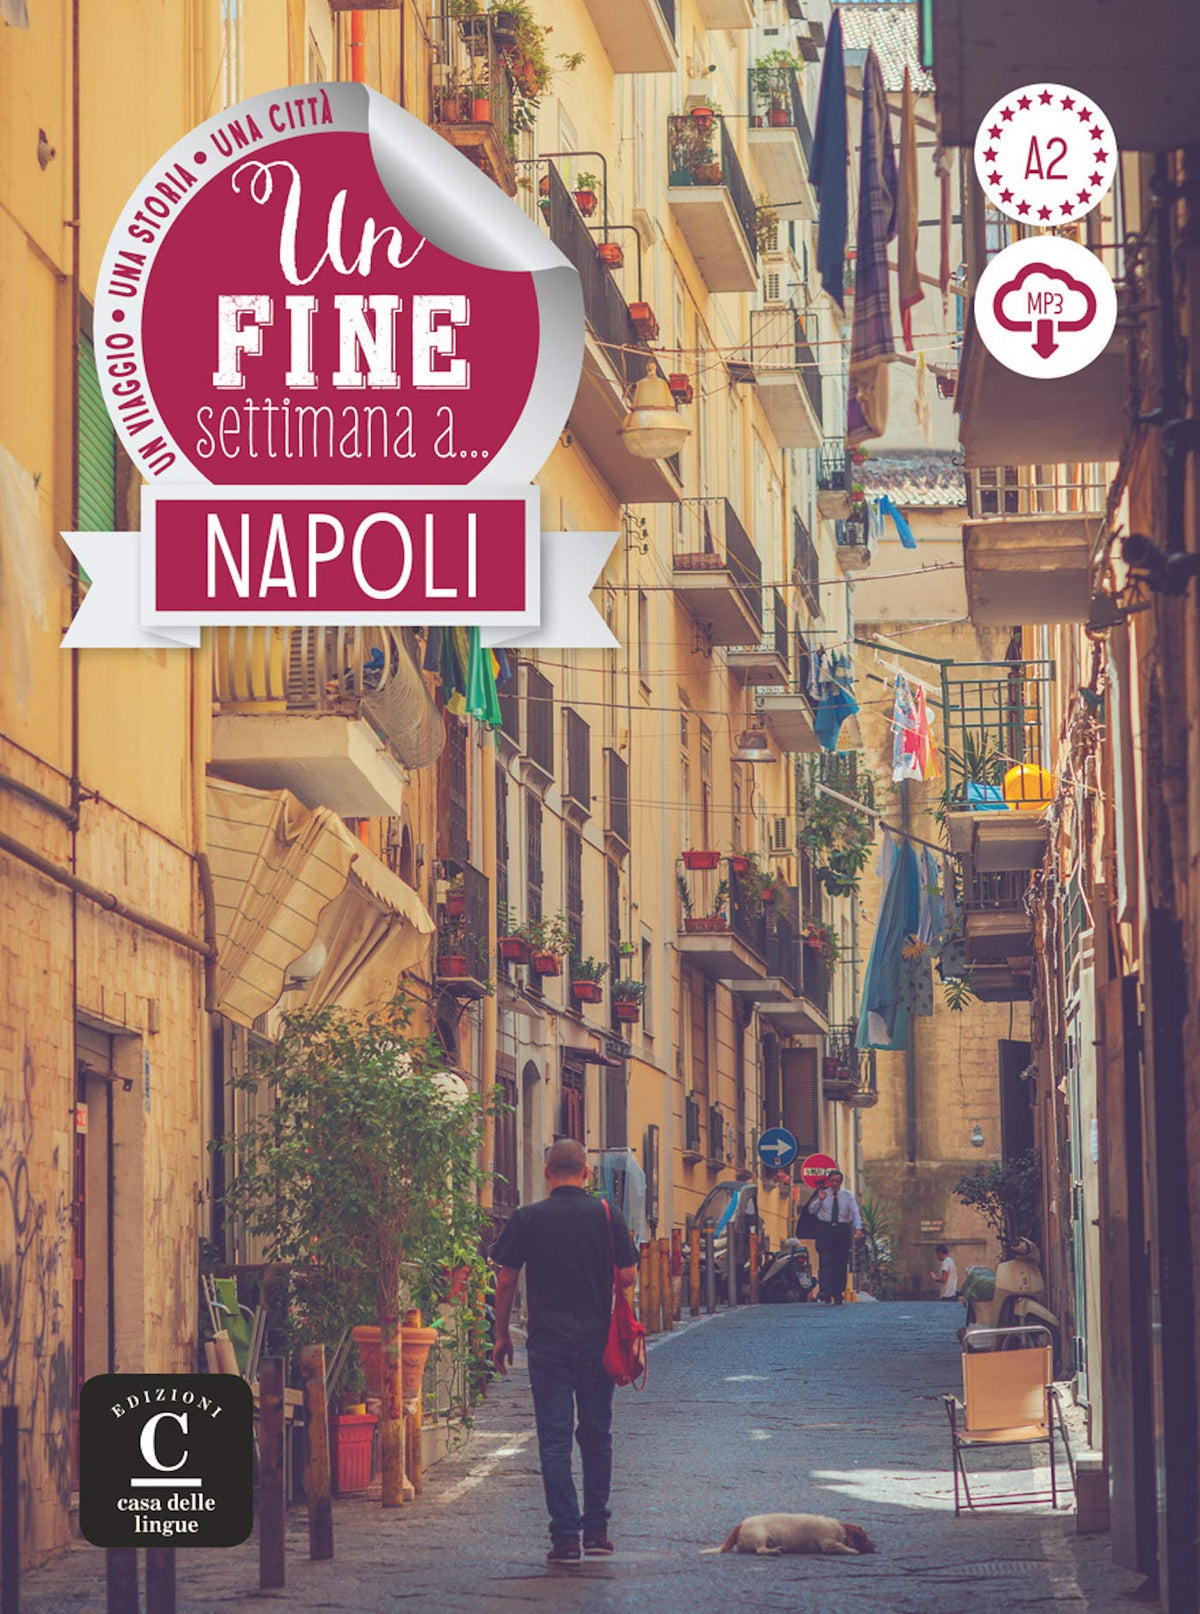 Un fine settimana a Napoli + online MP3 audio